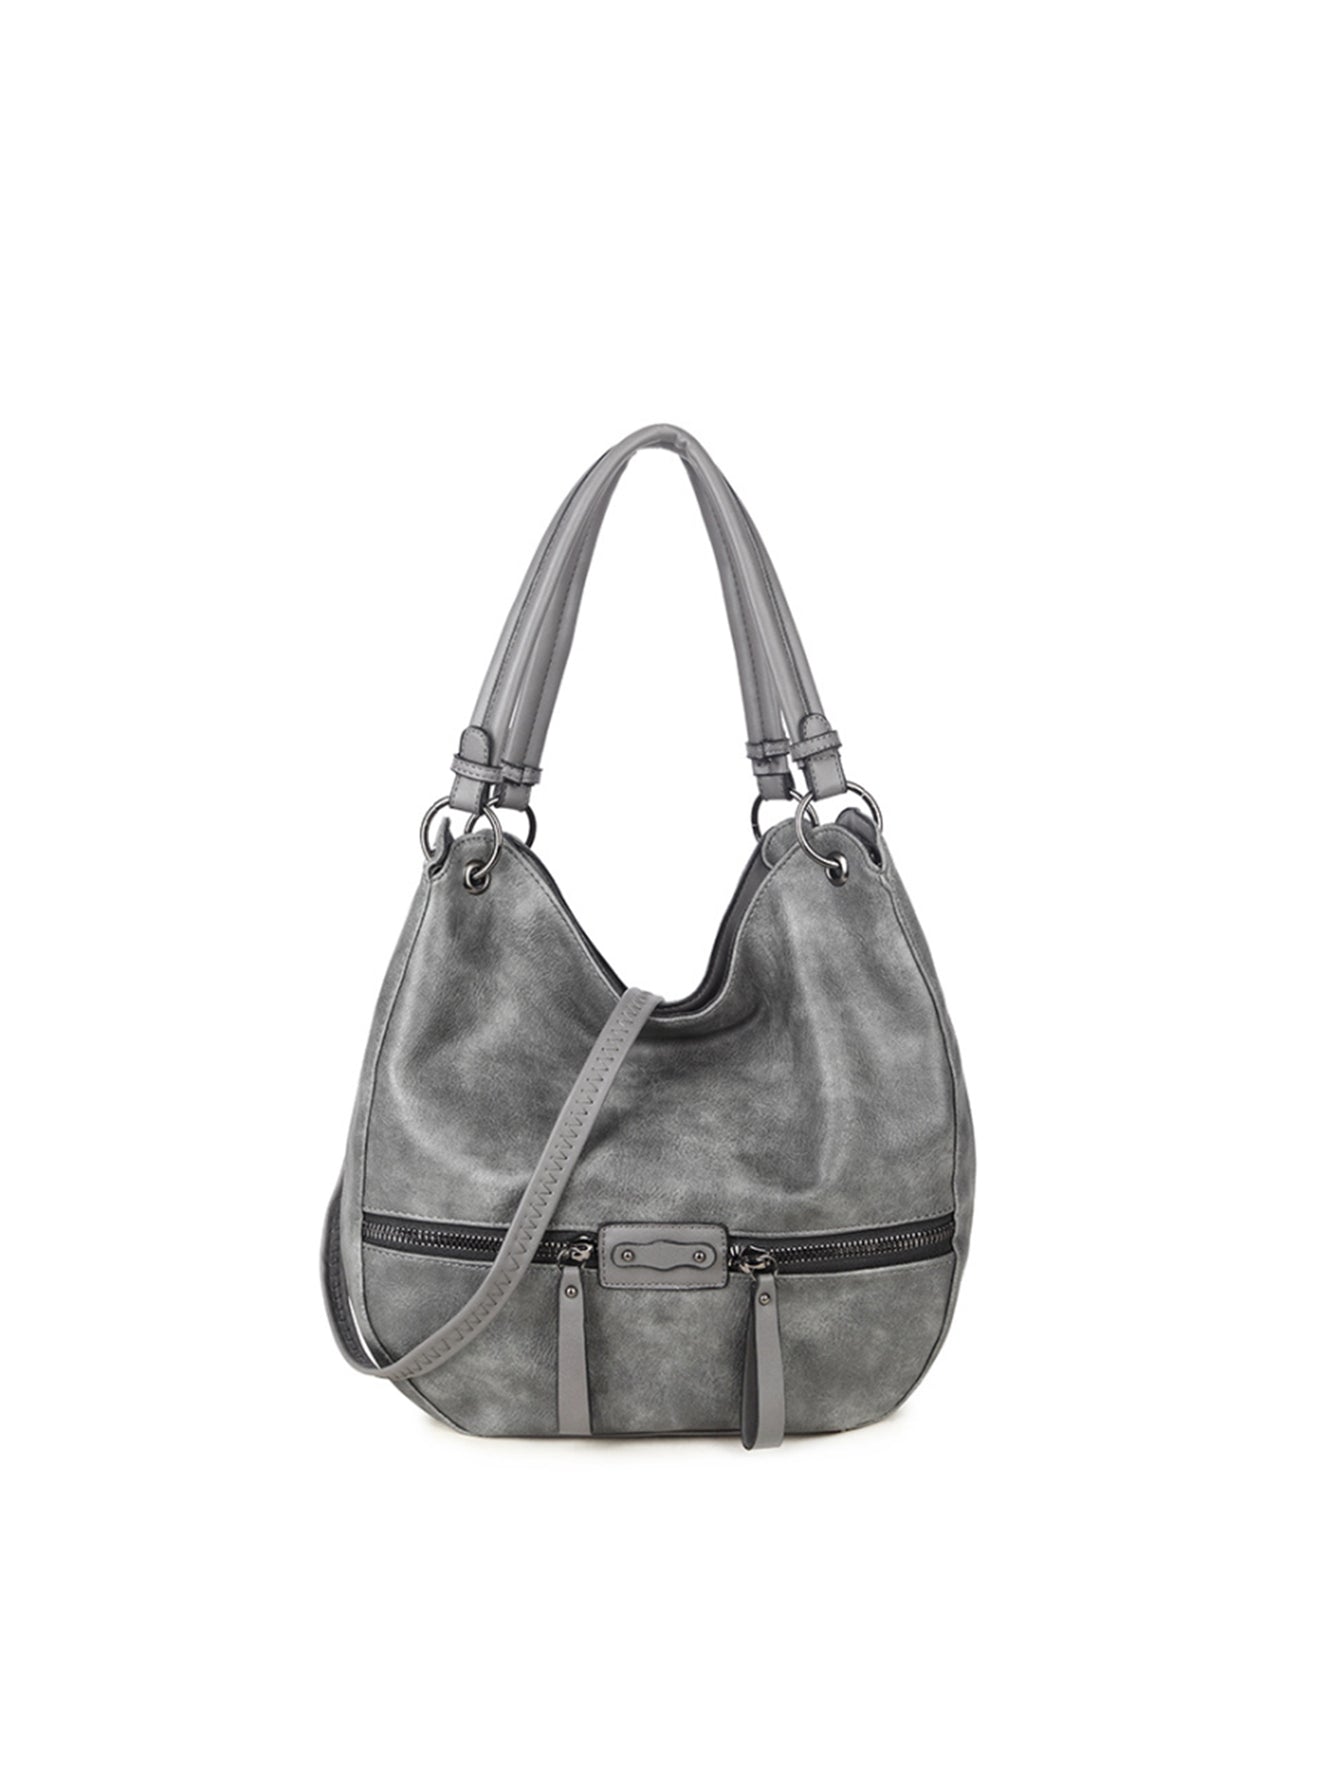 Women Vintage Hobo Shoulder Bag , Large Tote Satchel Bag Soft Leather Purse and Handbag Sai Feel